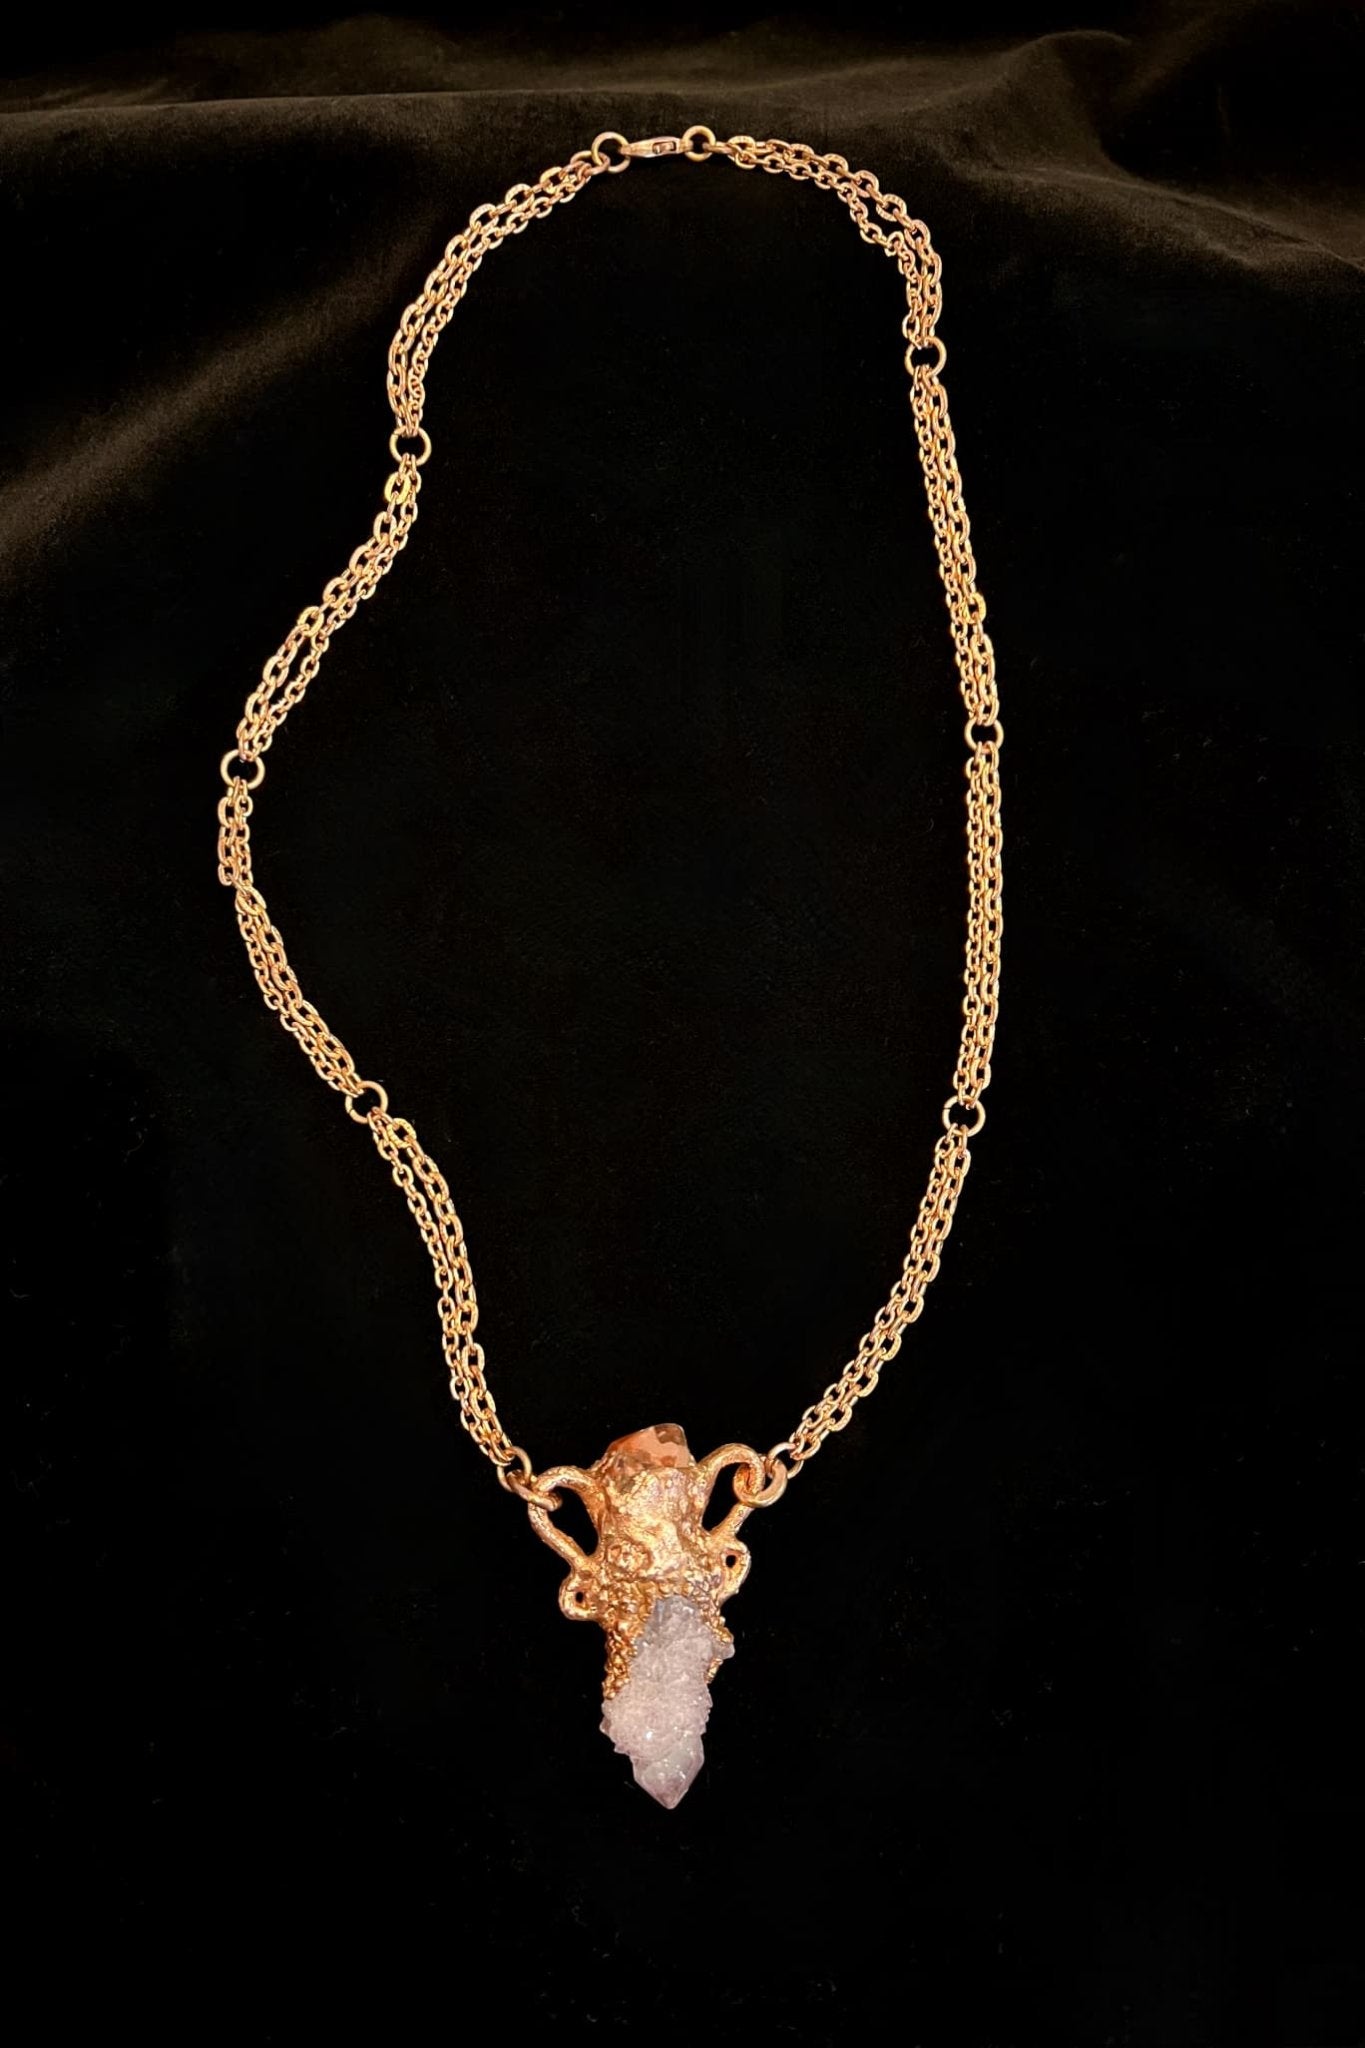 Spirit Quartz with Iron Quartz Necklace - Necklace